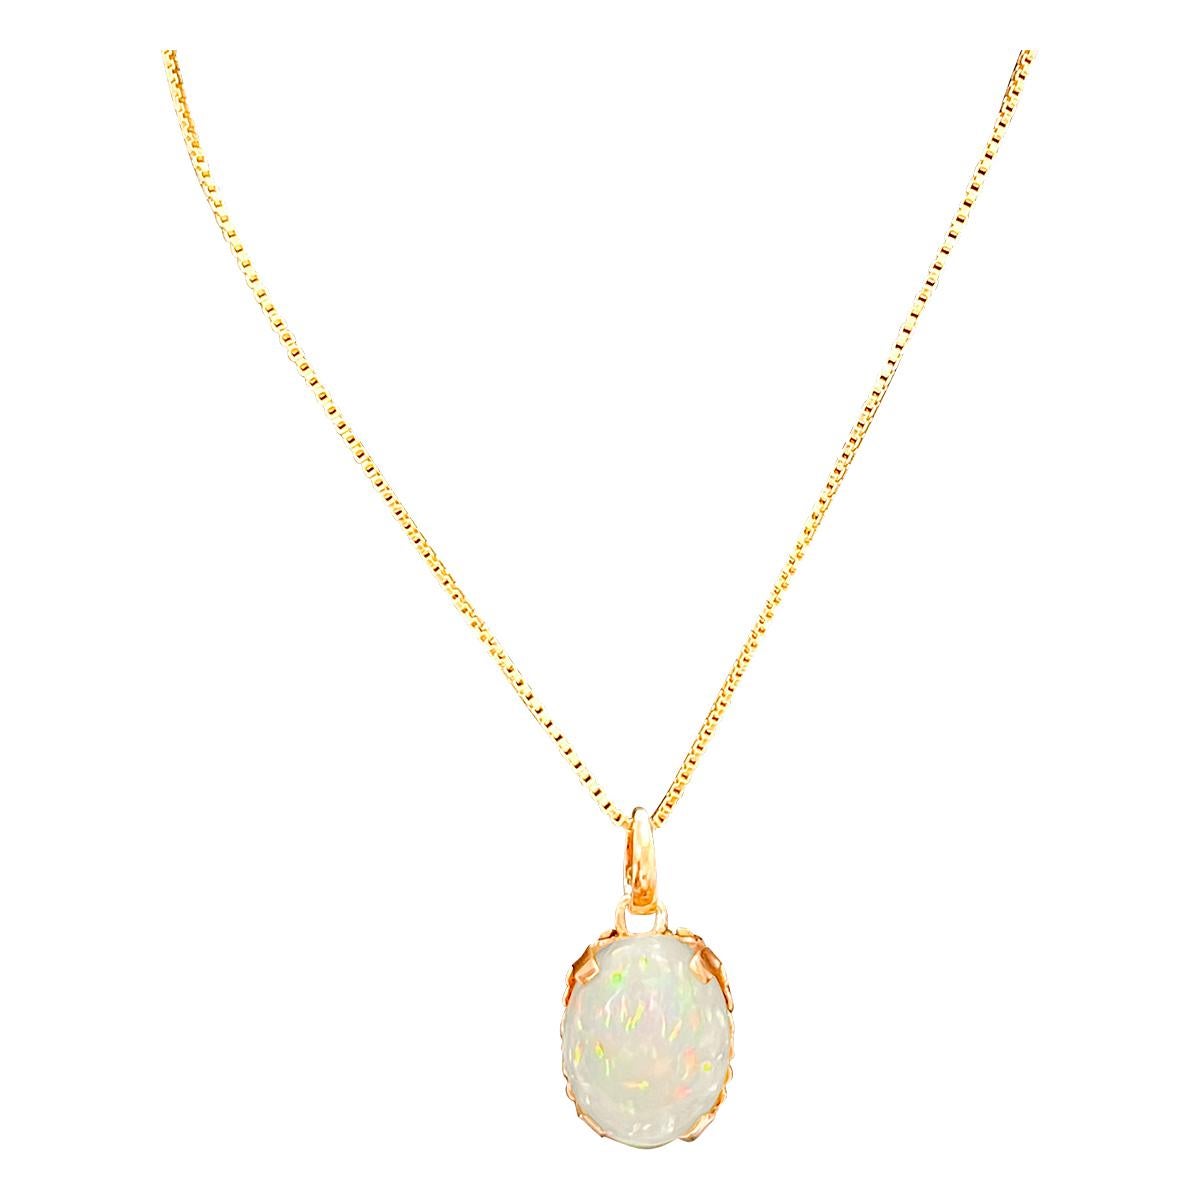 9 Carat Oval Ethiopian Opal Pendant / Necklace 18 Karat + 18 Kt Gold Chain 13